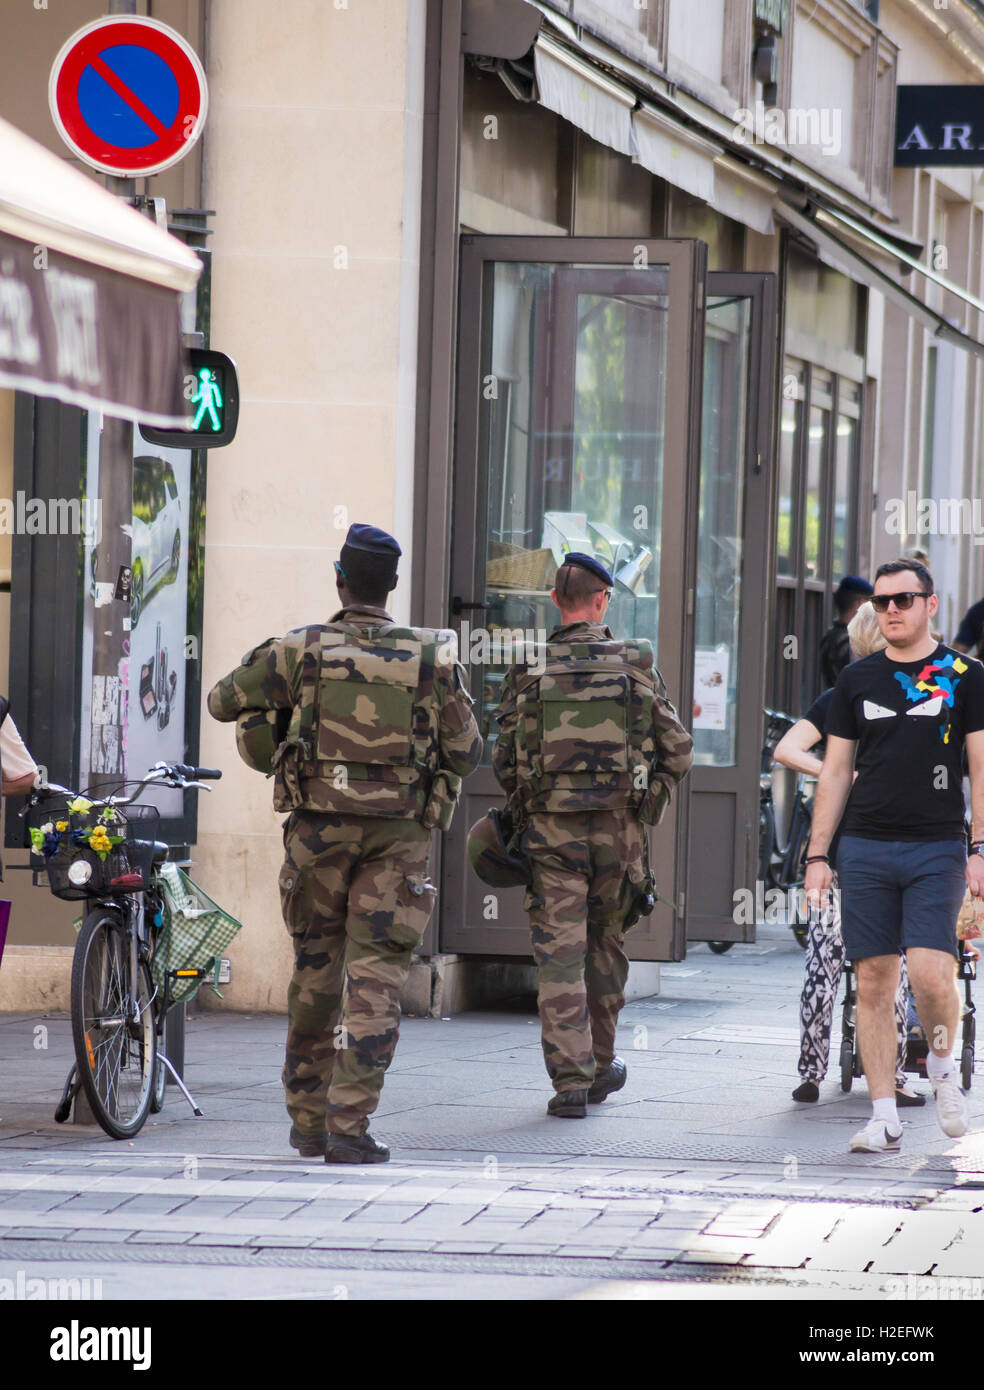 Les civils des soldats de l'Eurocorps rencontre sur la patrouille anti-terroristes, rue des Dominicains, Nancy, Meurthe et Moselle (Grand Est), France Banque D'Images